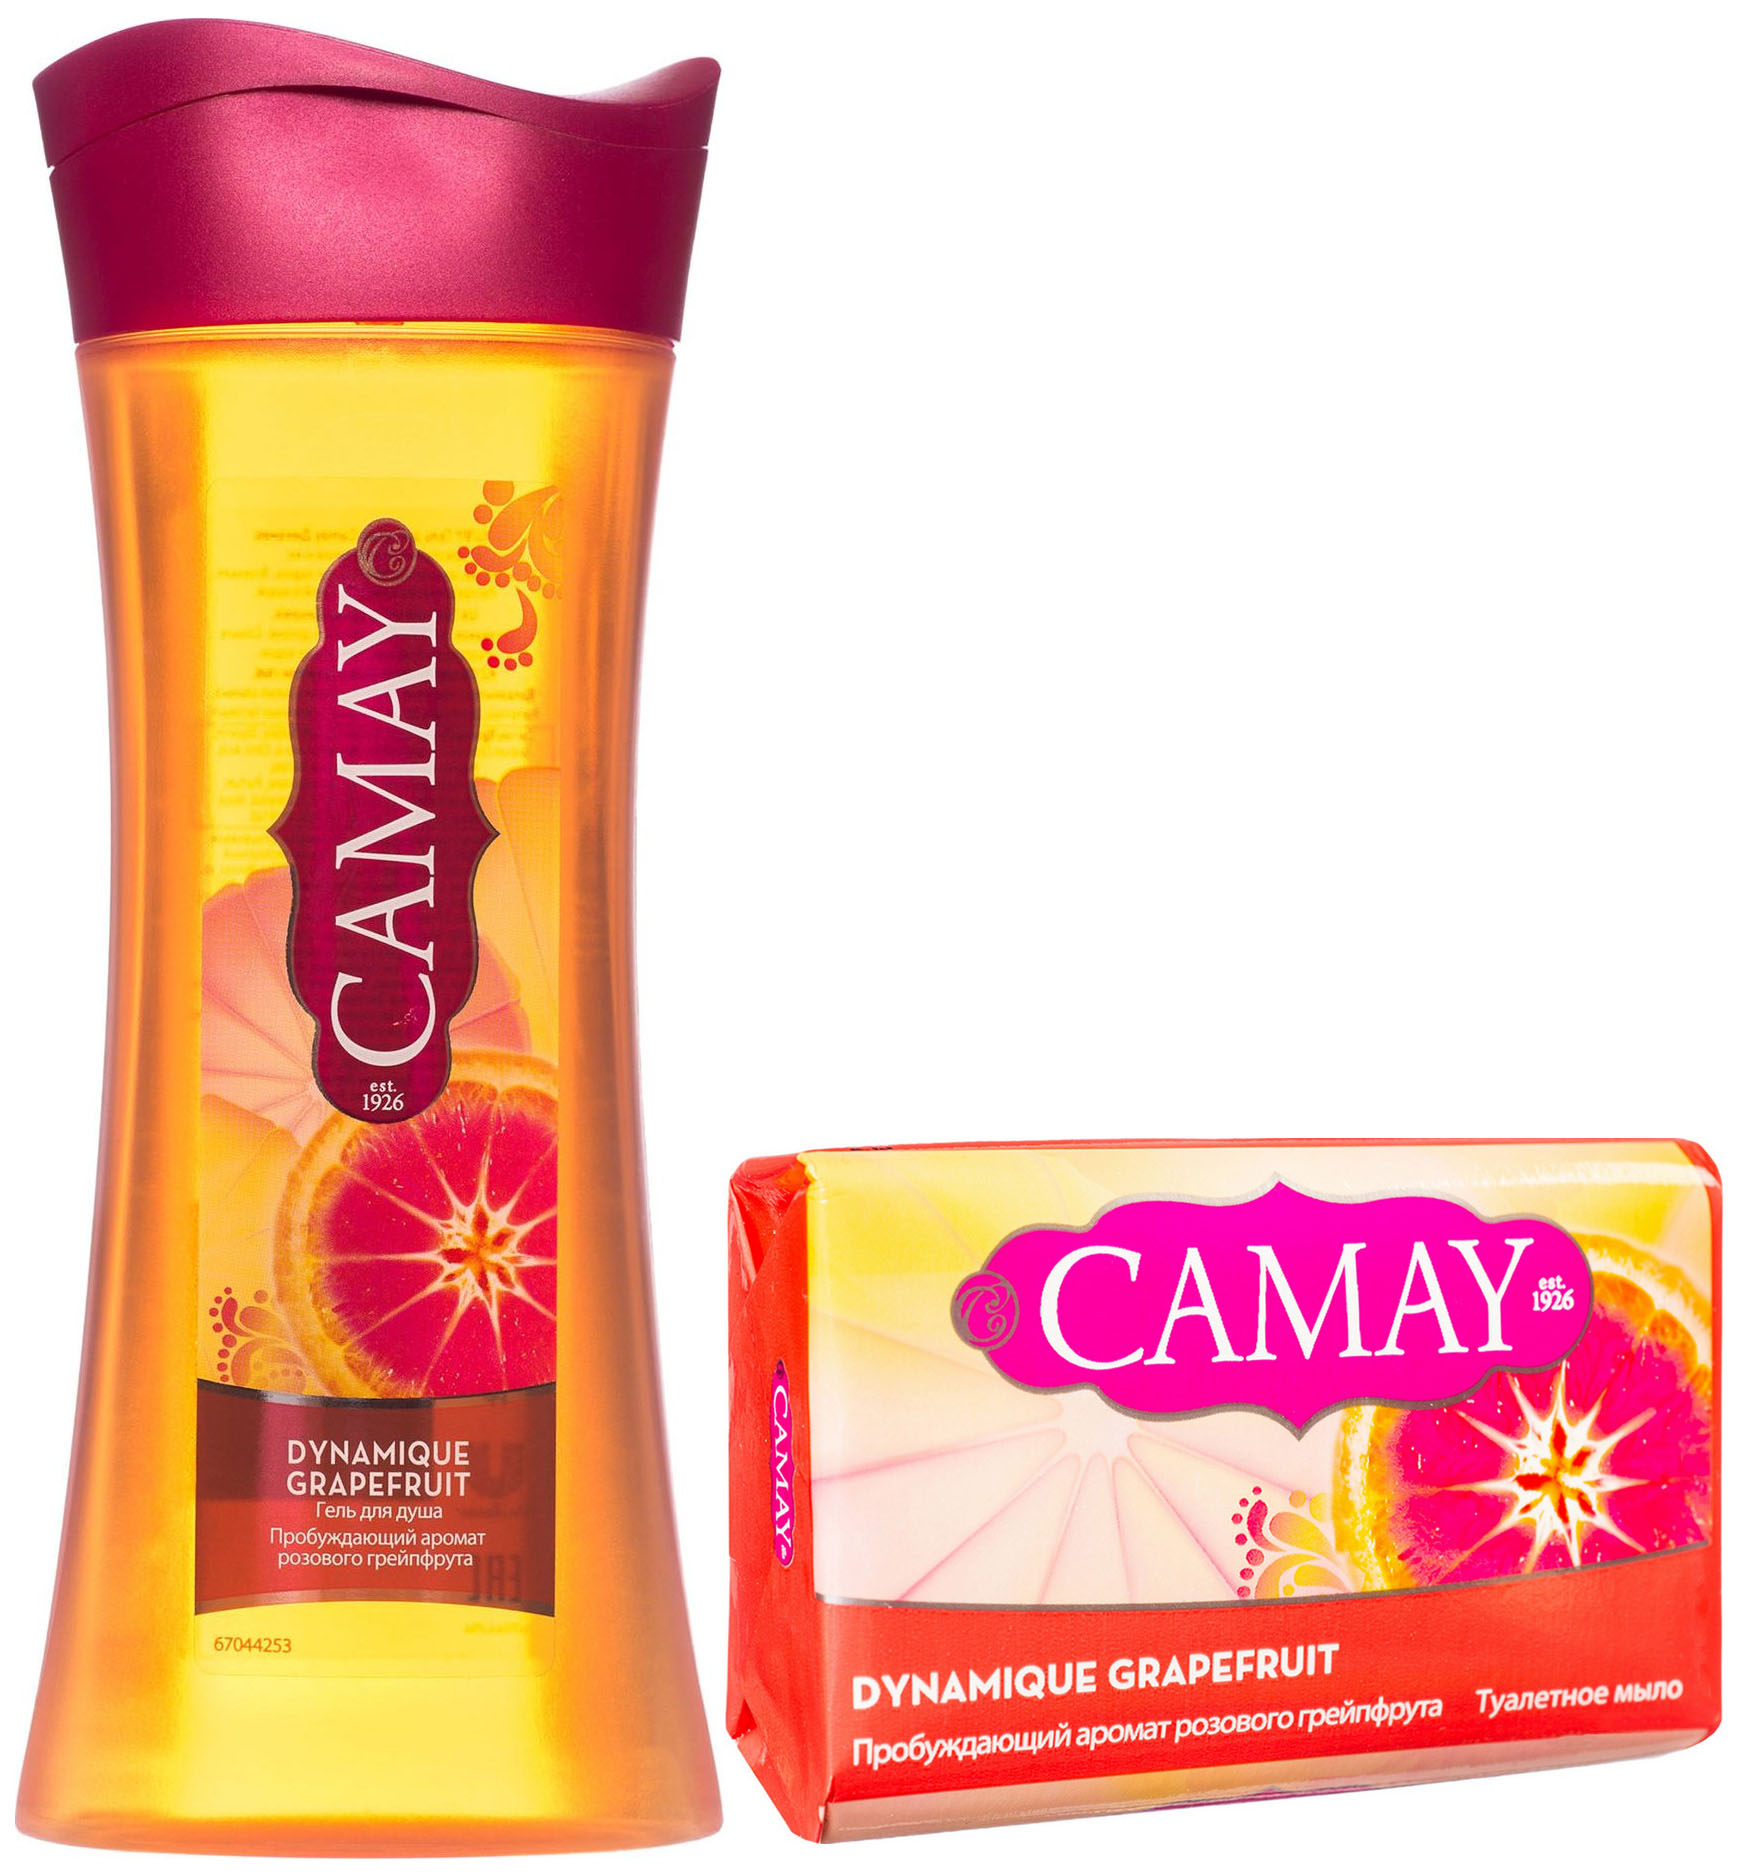 Гель для душа Camay Dynamique Grapefruit 250 мл + Мыло Camay Dynamique Grapefruit 85 г мыло туалетное camay романтик 85г 2шт